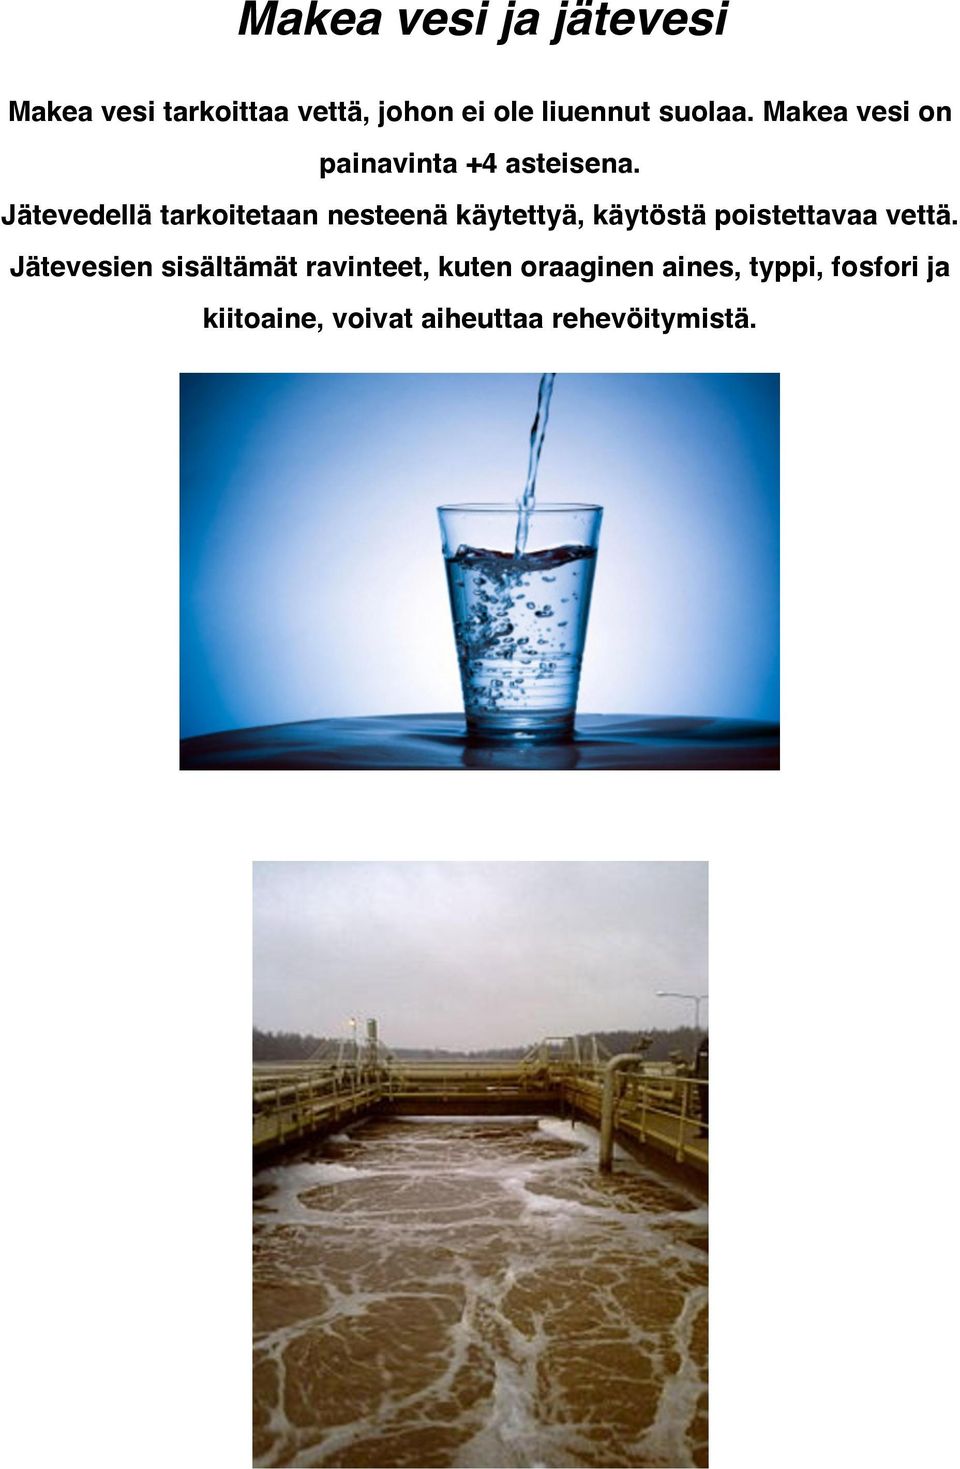 Jätevedellä tarkoitetaan nesteenä käytettyä, käytöstä poistettavaa vettä.